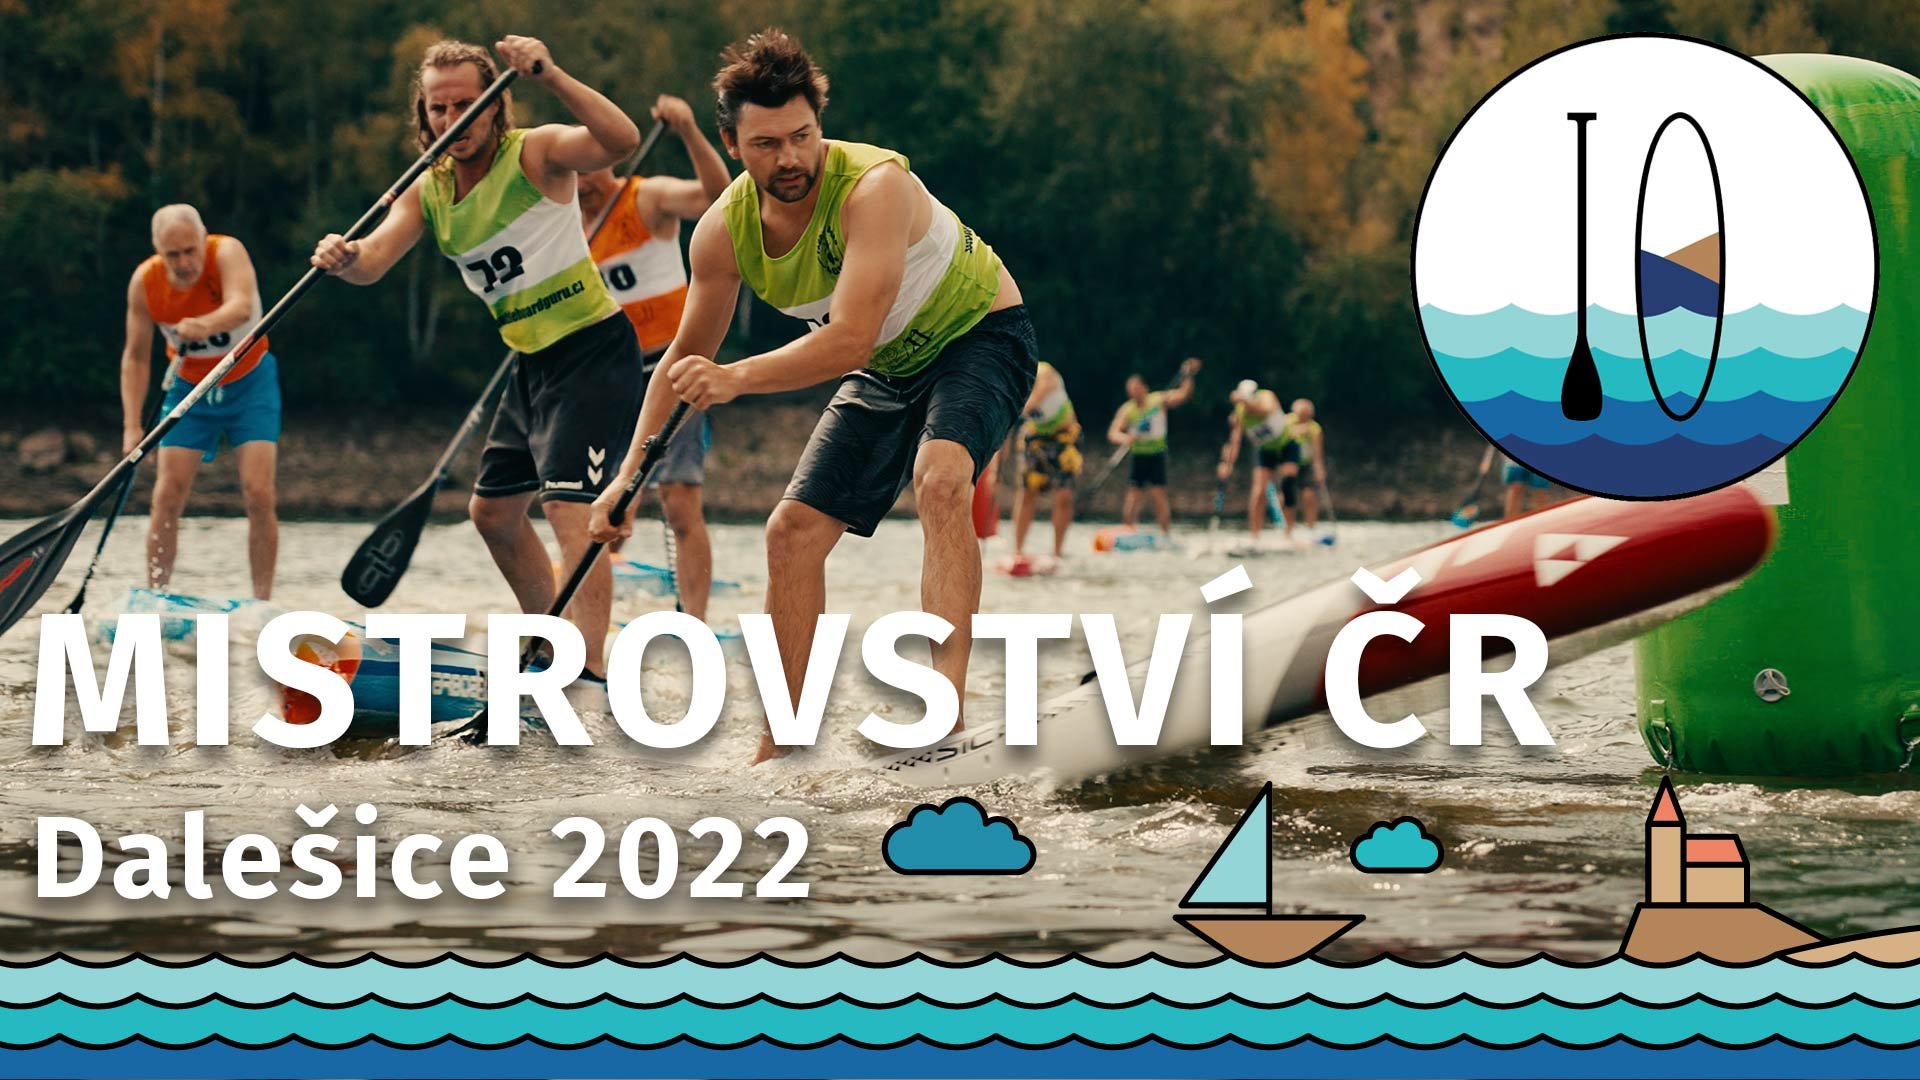 Mistrovství ČR v paddleboardingu 2022 - Dalešická přehrada